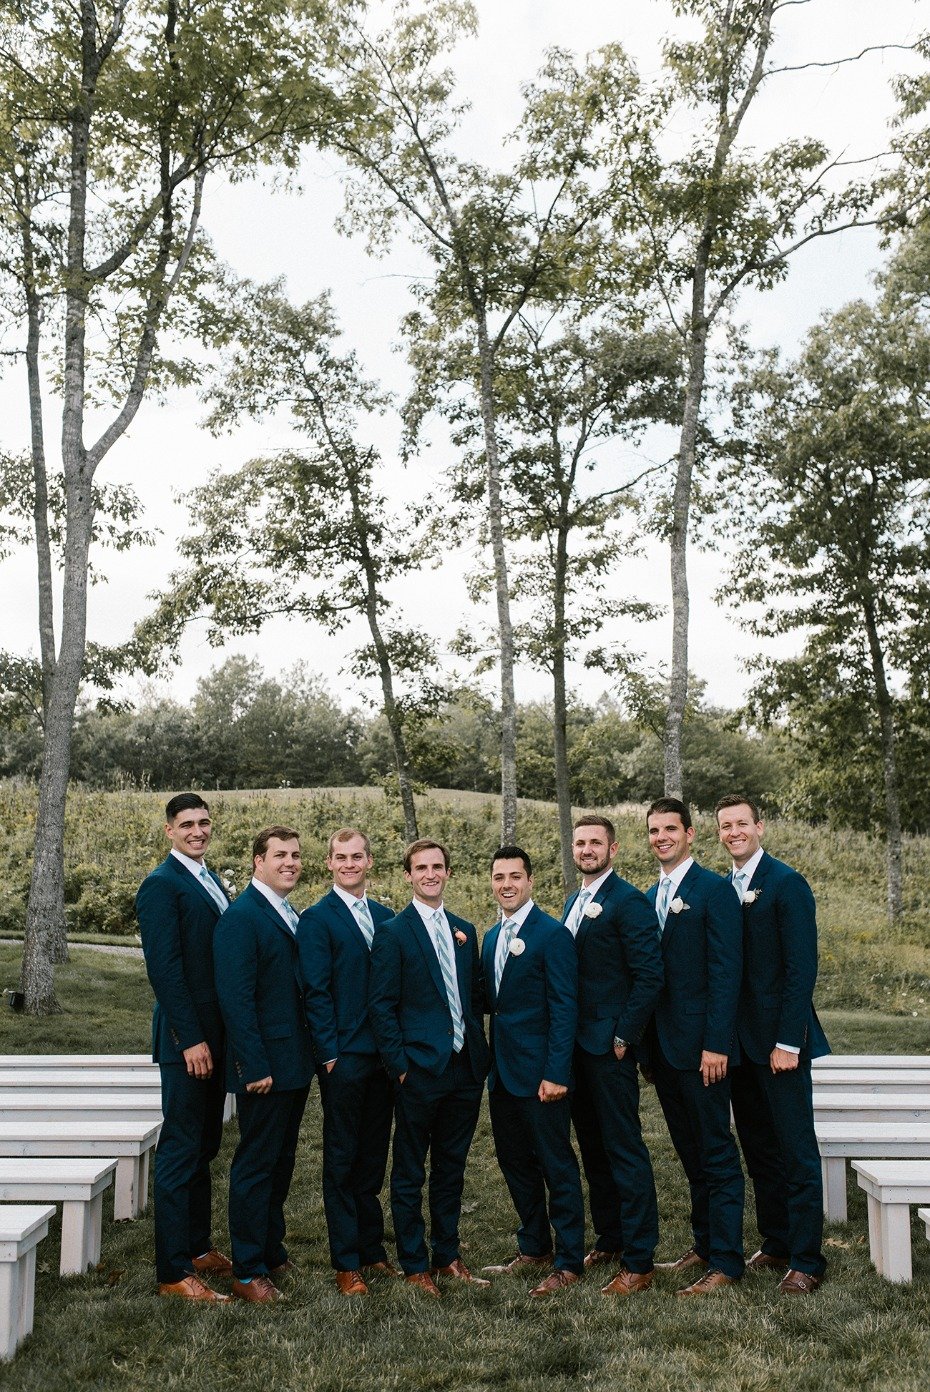 Matching groomsmen in navy suits